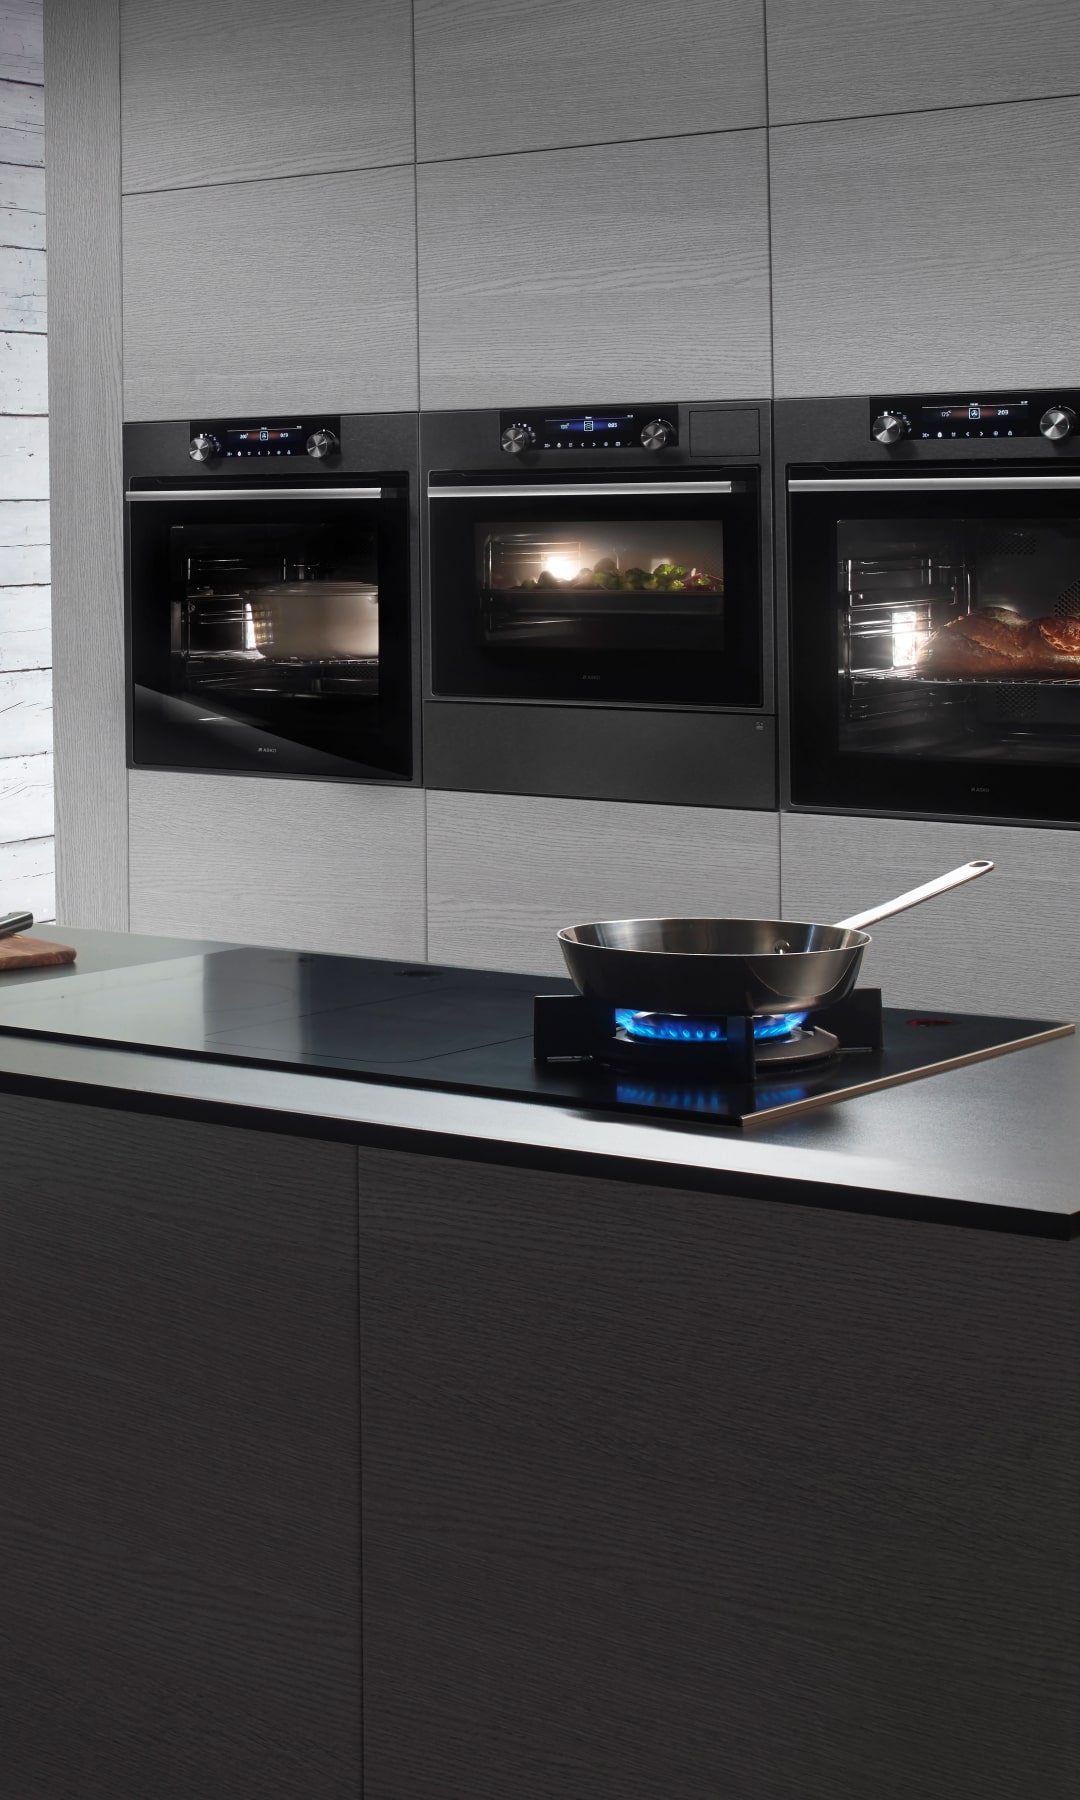 Asko home appliances with design | Kitchen Stories